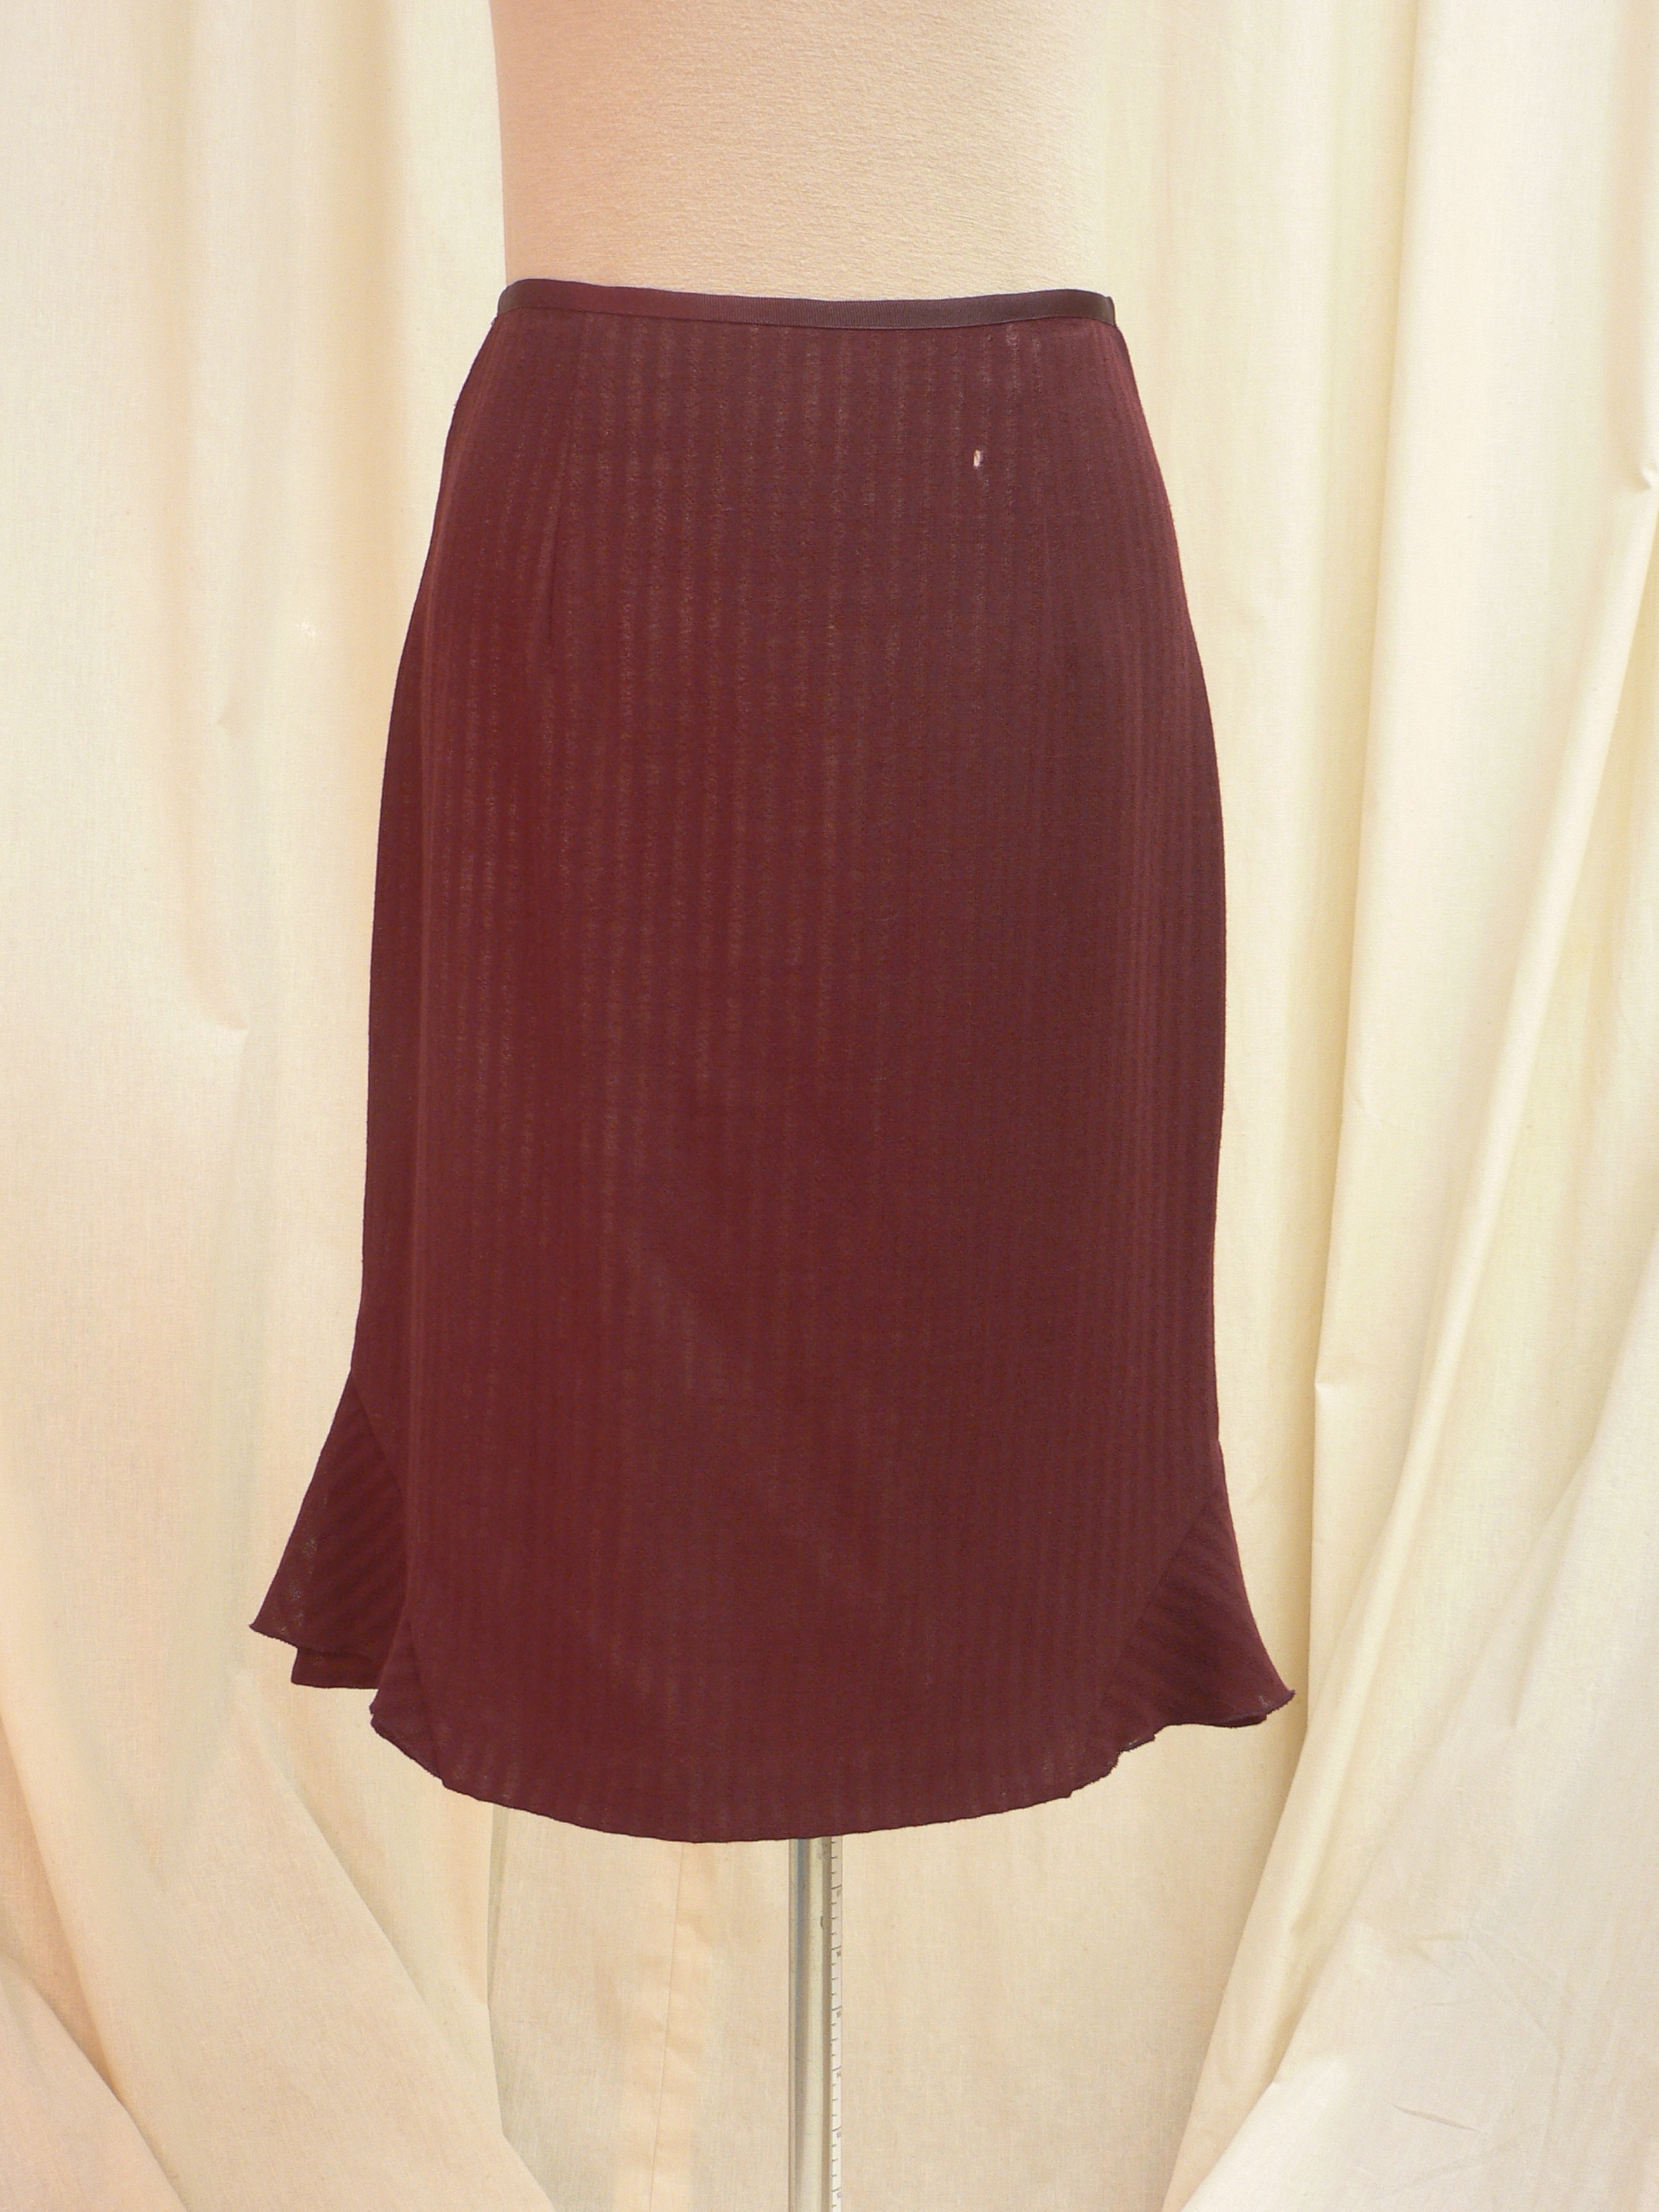 skirt05_front.JPG